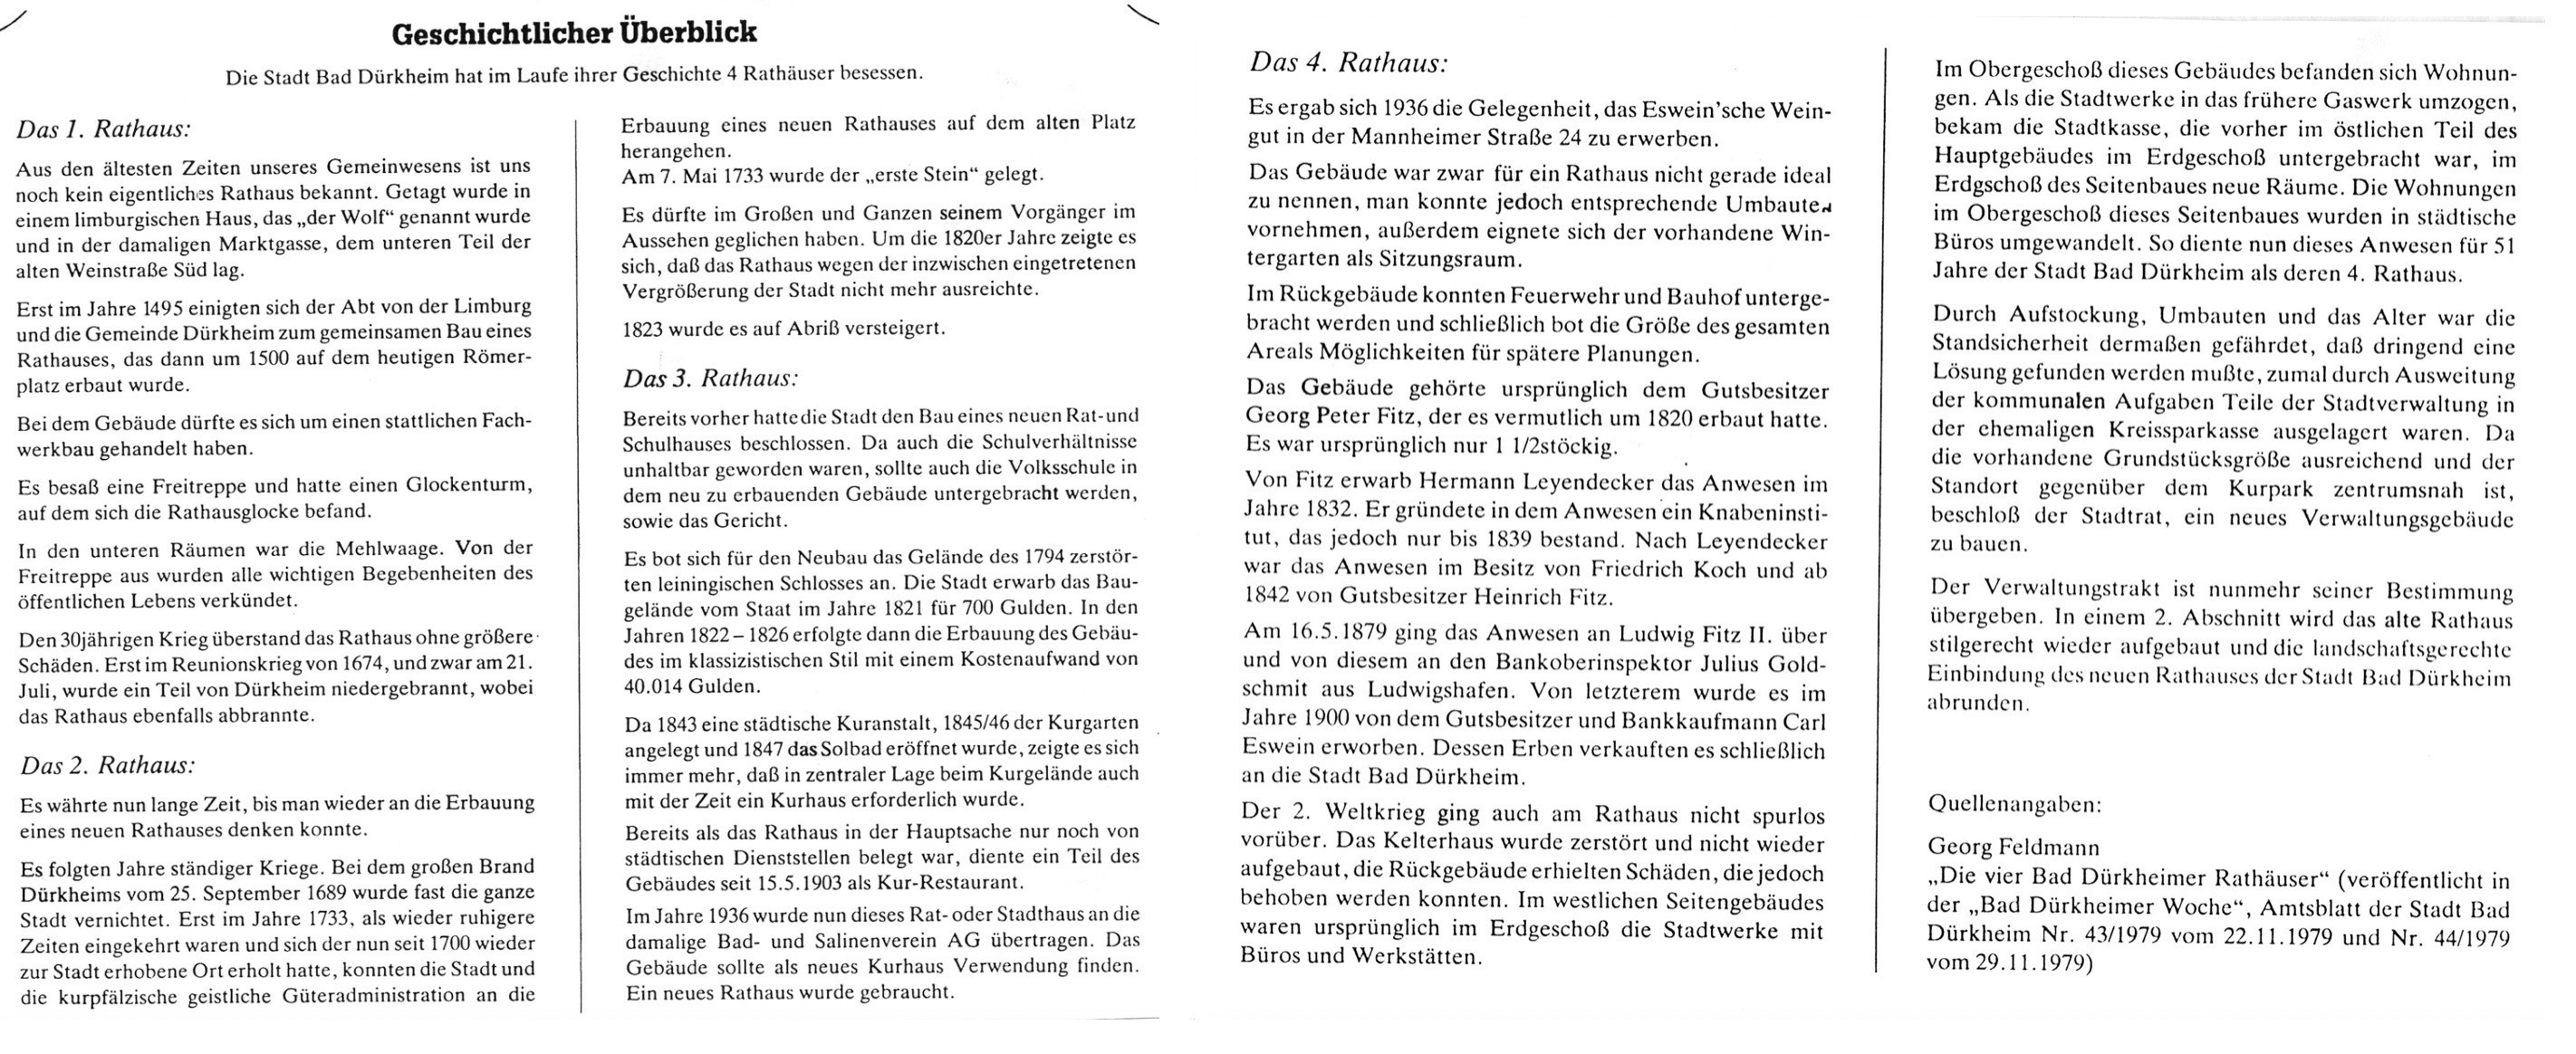 Foto-Sammlung Adolf Krapp, Ordner 12: Rathaus, 1979 (Museumsgesellschaft Bad Dürkheim e.V. CC BY-NC-SA)